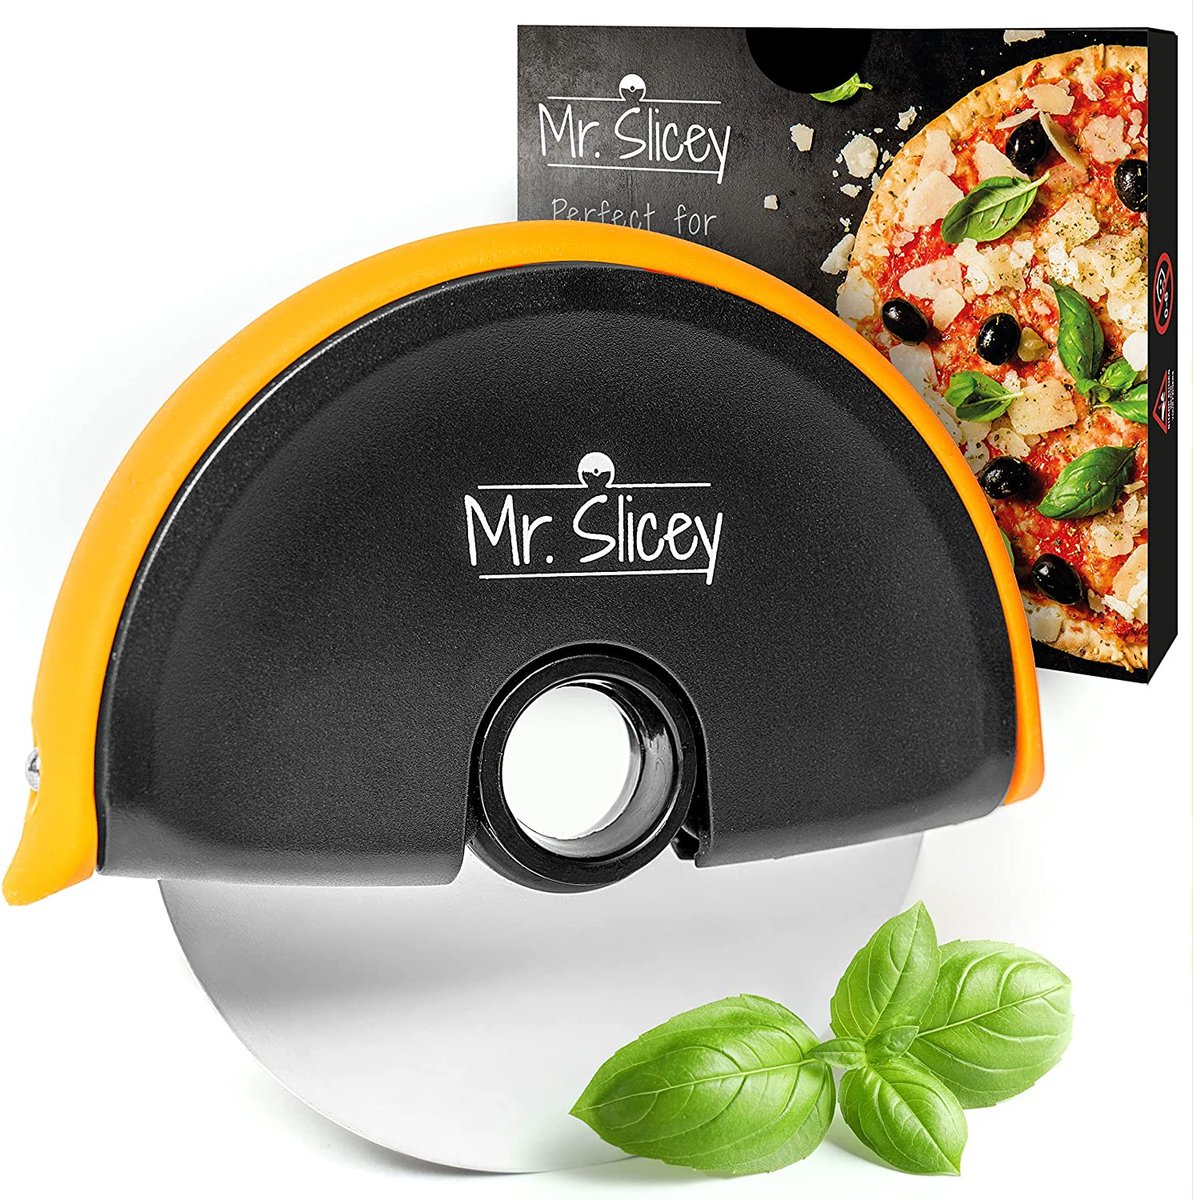 Helperfect Pizzasnijder Mr. Slicey - Extra Makkelijk Snijden van Pizza - Roestvrijstalen Pizzames met Rubberen Veiligheidsgrip